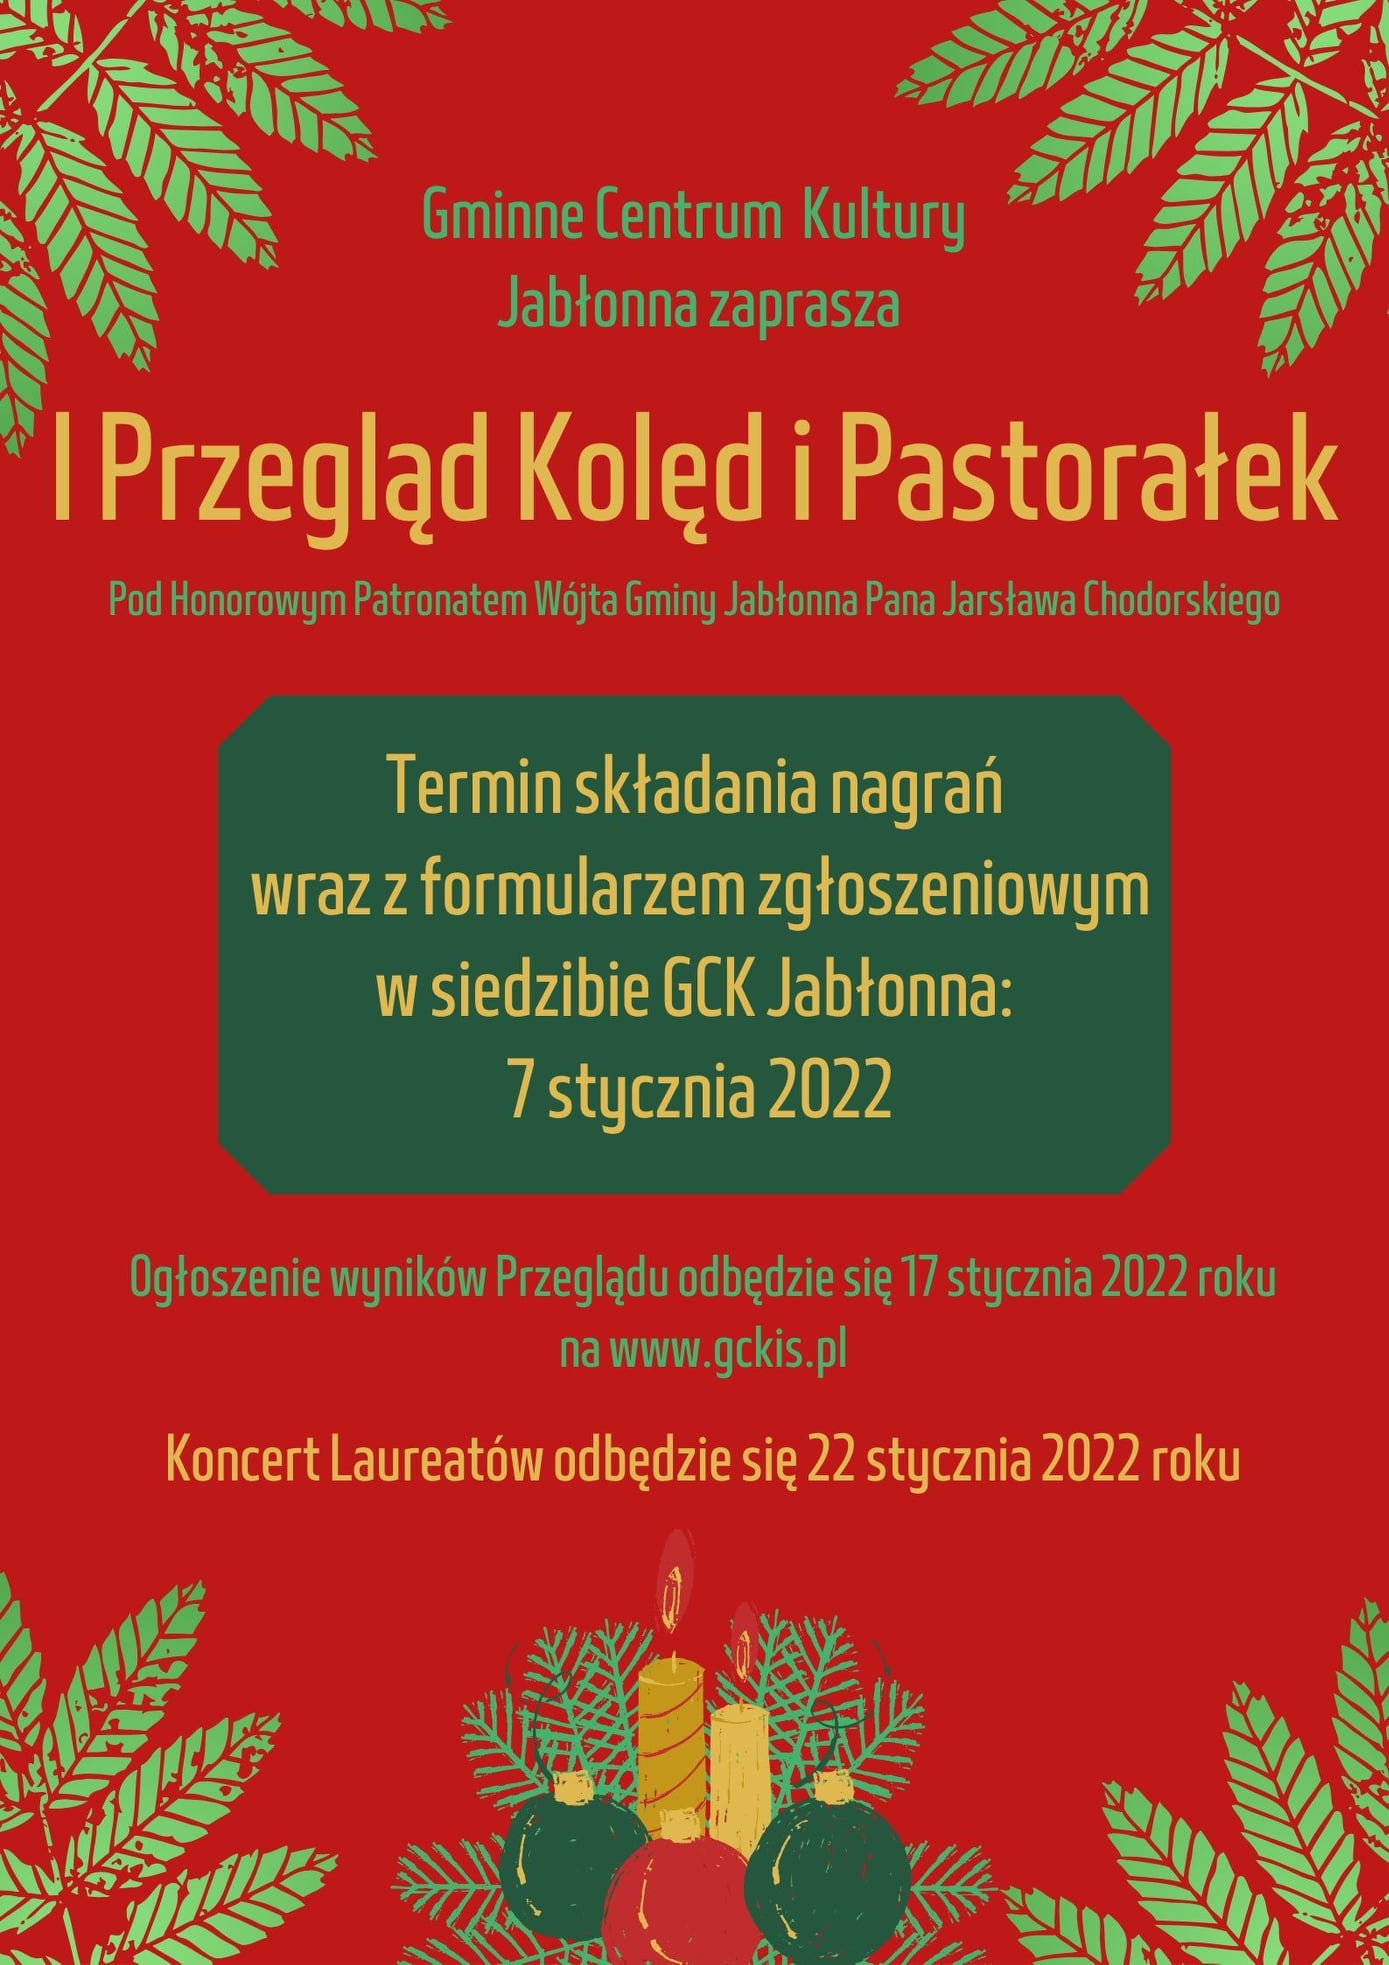 Gminne Centrum Kultury w Jabłonnie zaprasza do udziału w I Przeglądzie Kolęd i Pastorałek . Zgłoszenia przyjmowane są do 7 stycznia 2022 r. w siedzibie GCK Jabłonna, Modlińska 102, Jabłonna lub na adres e-mail: gckis@jablonna.pl.